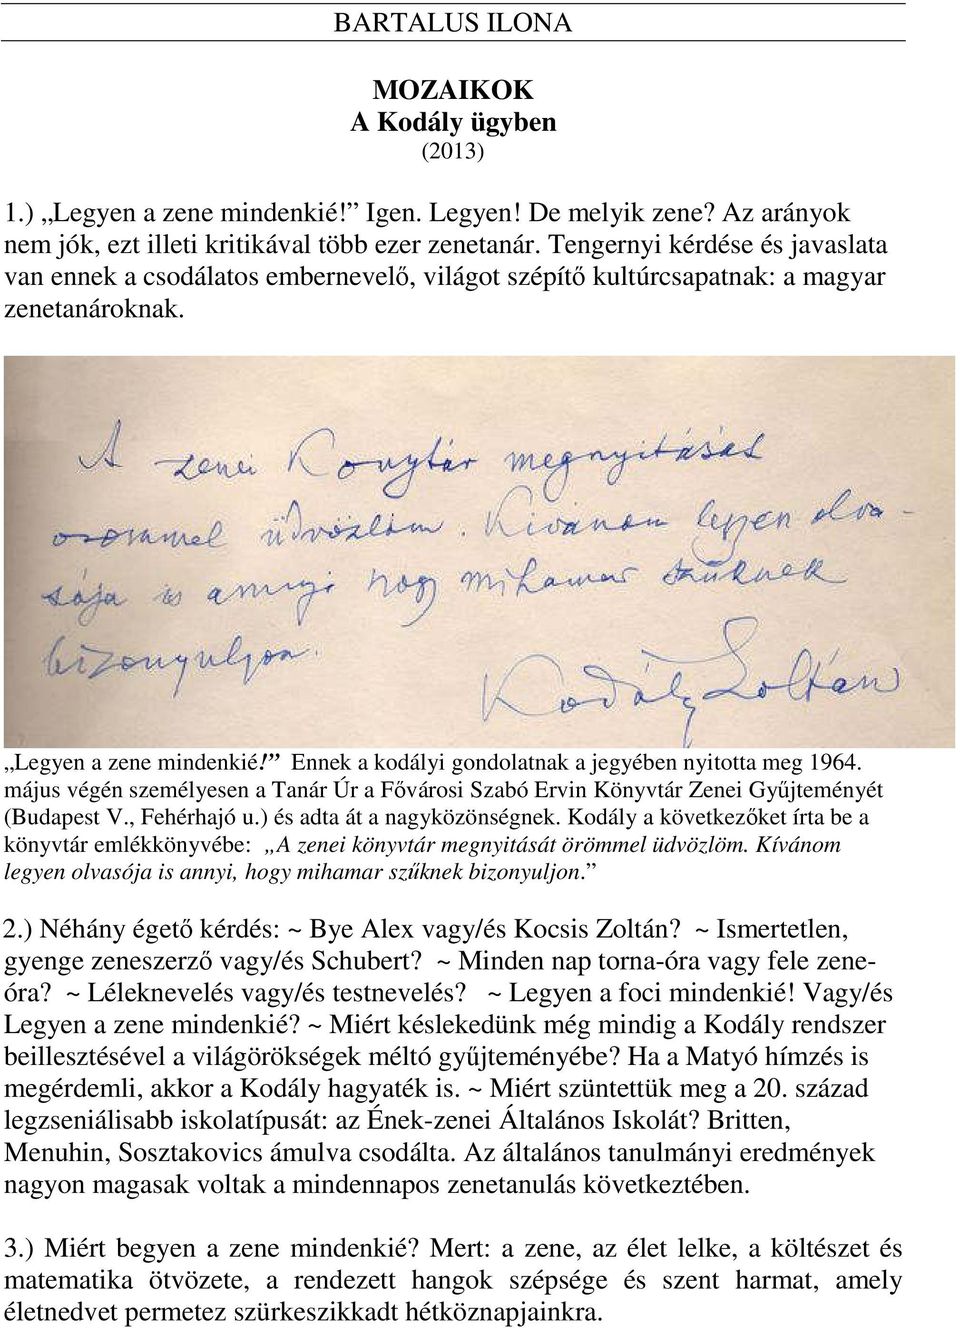 Ennek a kodályi gondolatnak a jegyében nyitotta meg 1964. május végén személyesen a Tanár Úr a Fővárosi Szabó Ervin Könyvtár Zenei Gyűjteményét (Budapest V., Fehérhajó u.